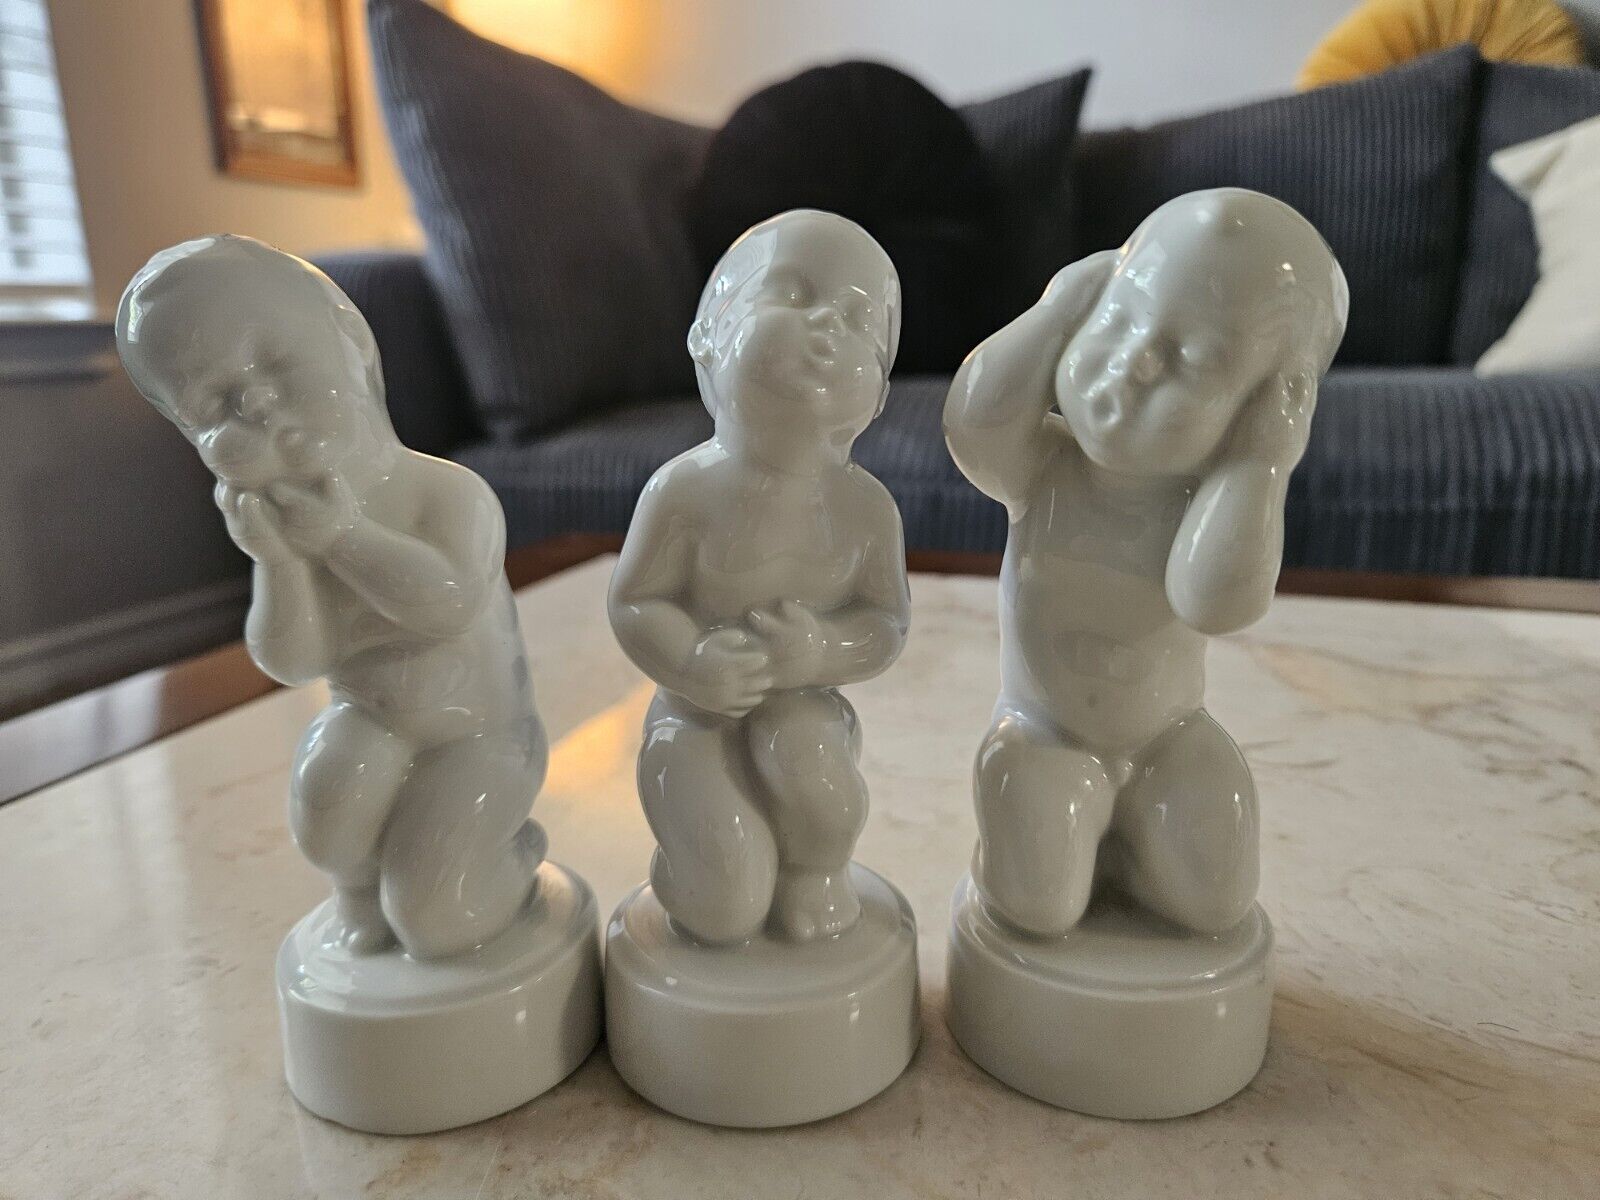 Unique Bing & Grondahl - Royal Copenhagen Porcelain figurines Porsel Baby Boys